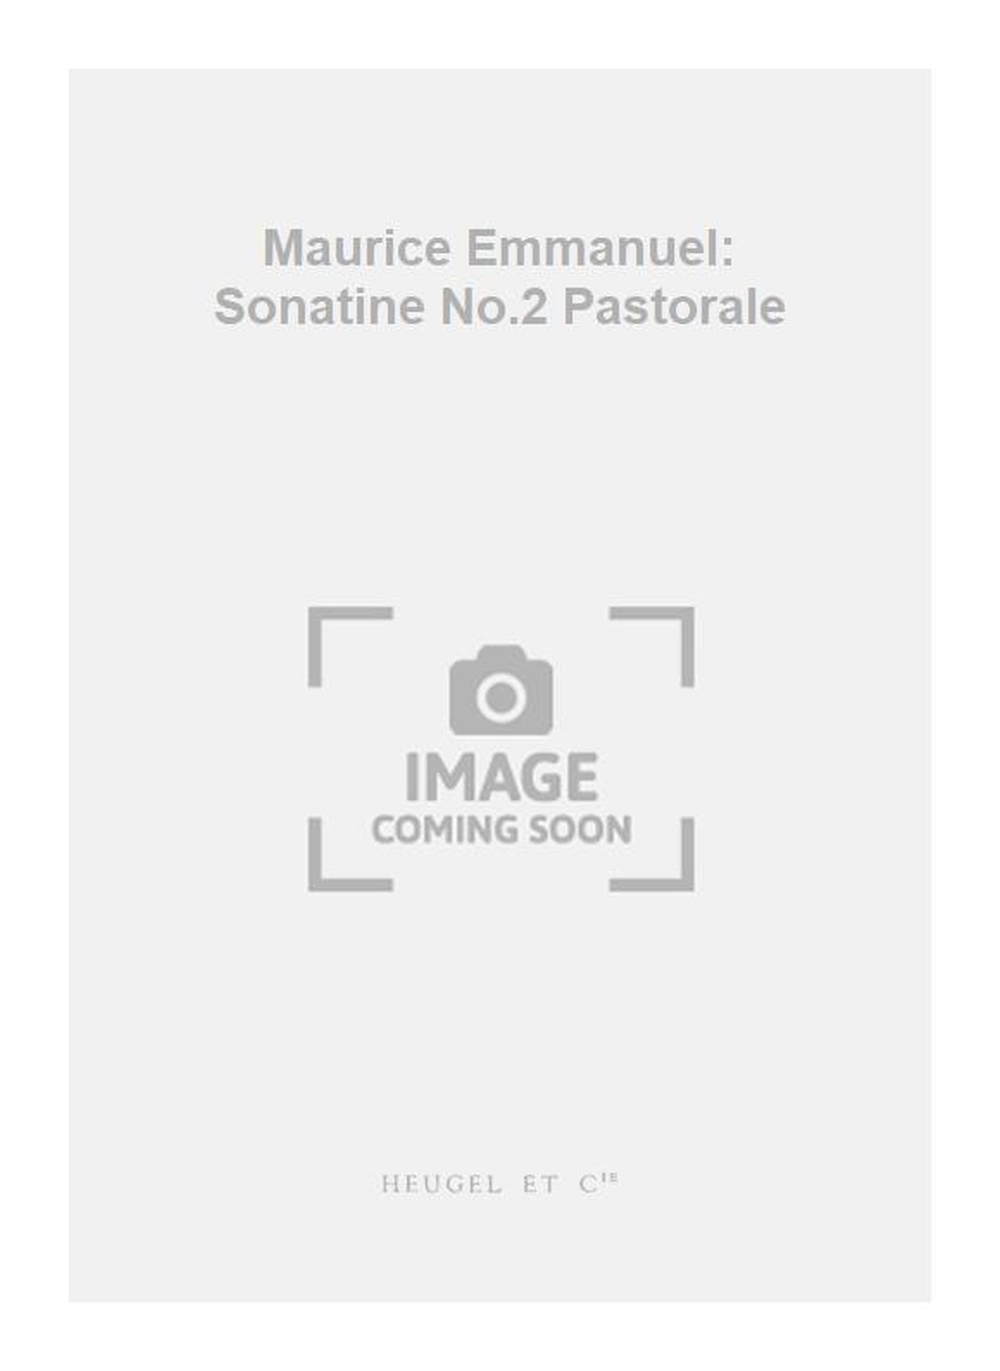 Maurice Emmanuel: Maurice Emmanuel: Sonatine No.2 Pastorale